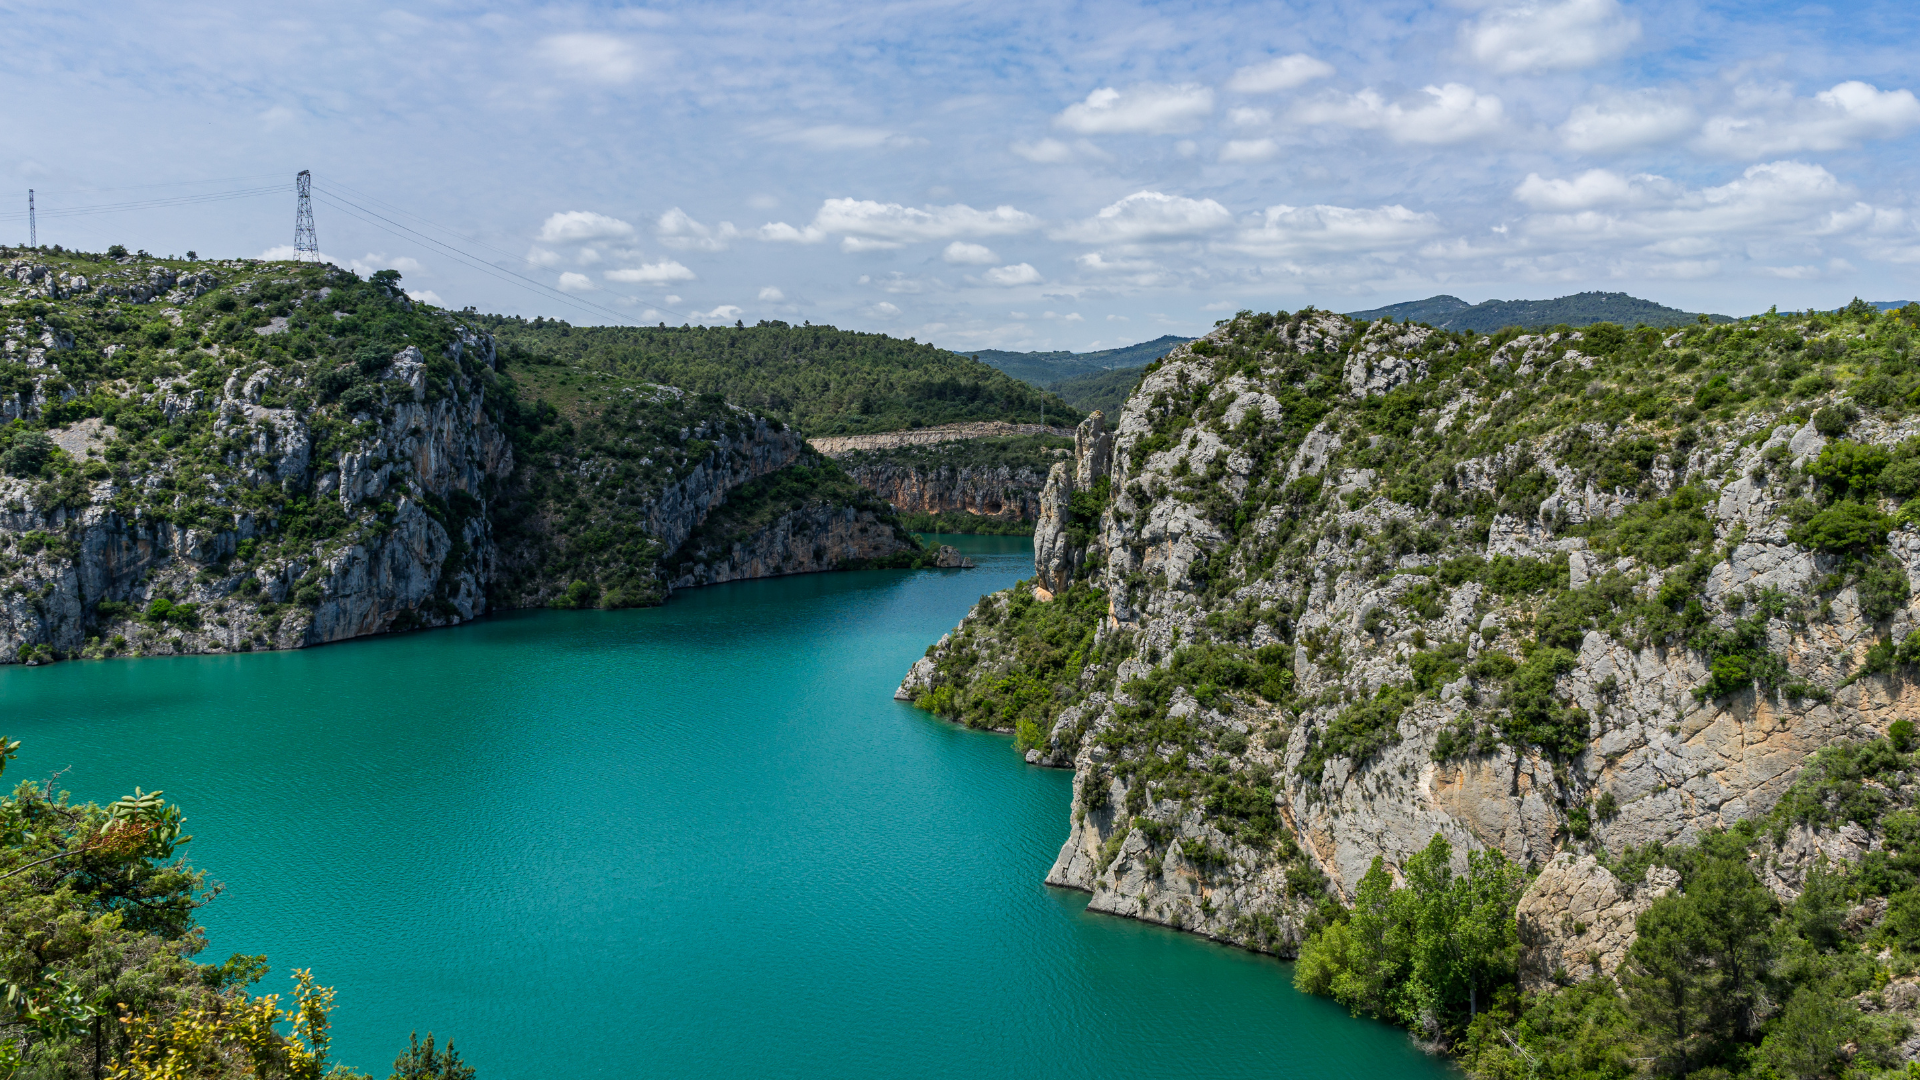 El Gobierno aprueba los Planes Hidrológicos que marcarán la gestión del agua en España hasta 2027El Gobierno aprueba los Planes Hidrológicos que marcarán la gestión del agua en España hasta 2027